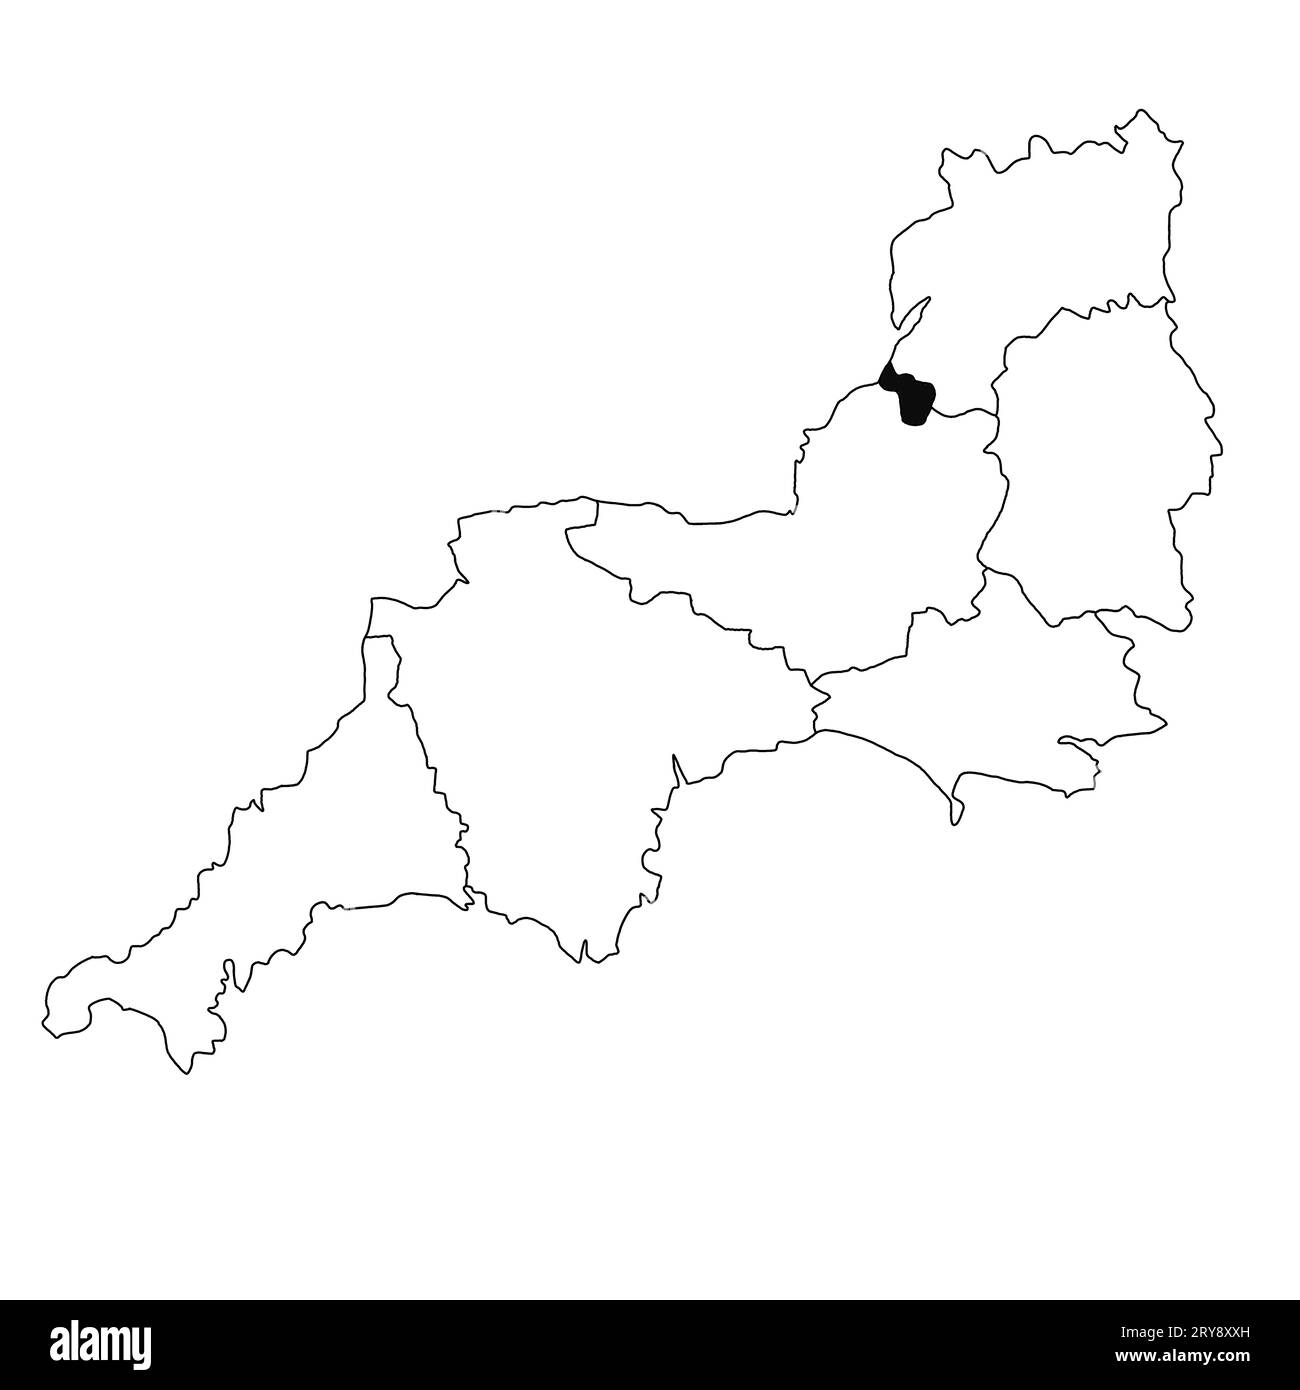 Carte de Bristol dans la province du sud-ouest de l'Angleterre sur fond blanc. Carte du comté unique mise en évidence par la couleur noire sur le sud-ouest de l'Angleterre administrative Banque D'Images